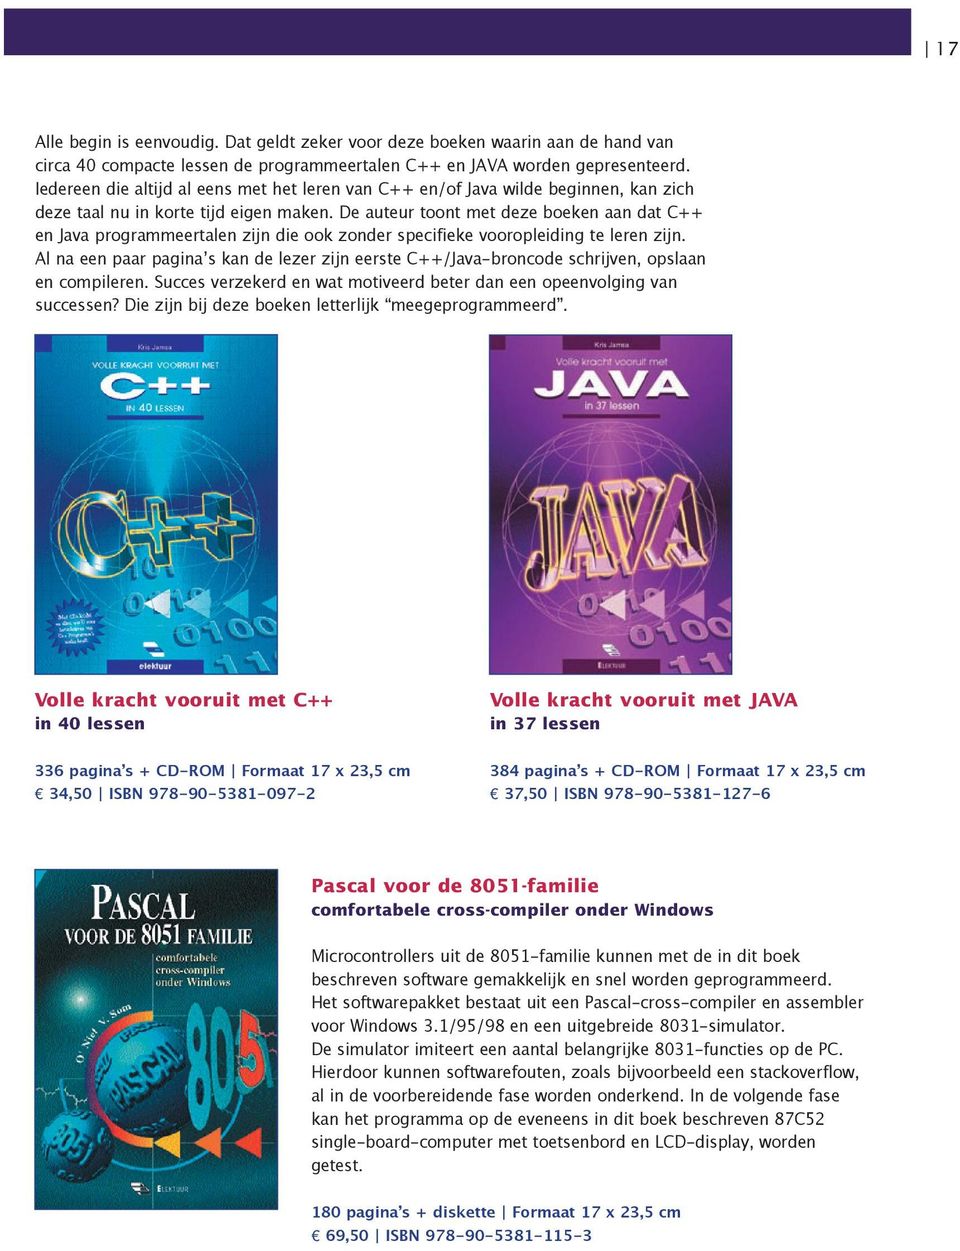 De auteur toont met deze boeken aan dat C++ en Java programmeertalen zijn die ook zonder specifieke vooropleiding te leren zijn.